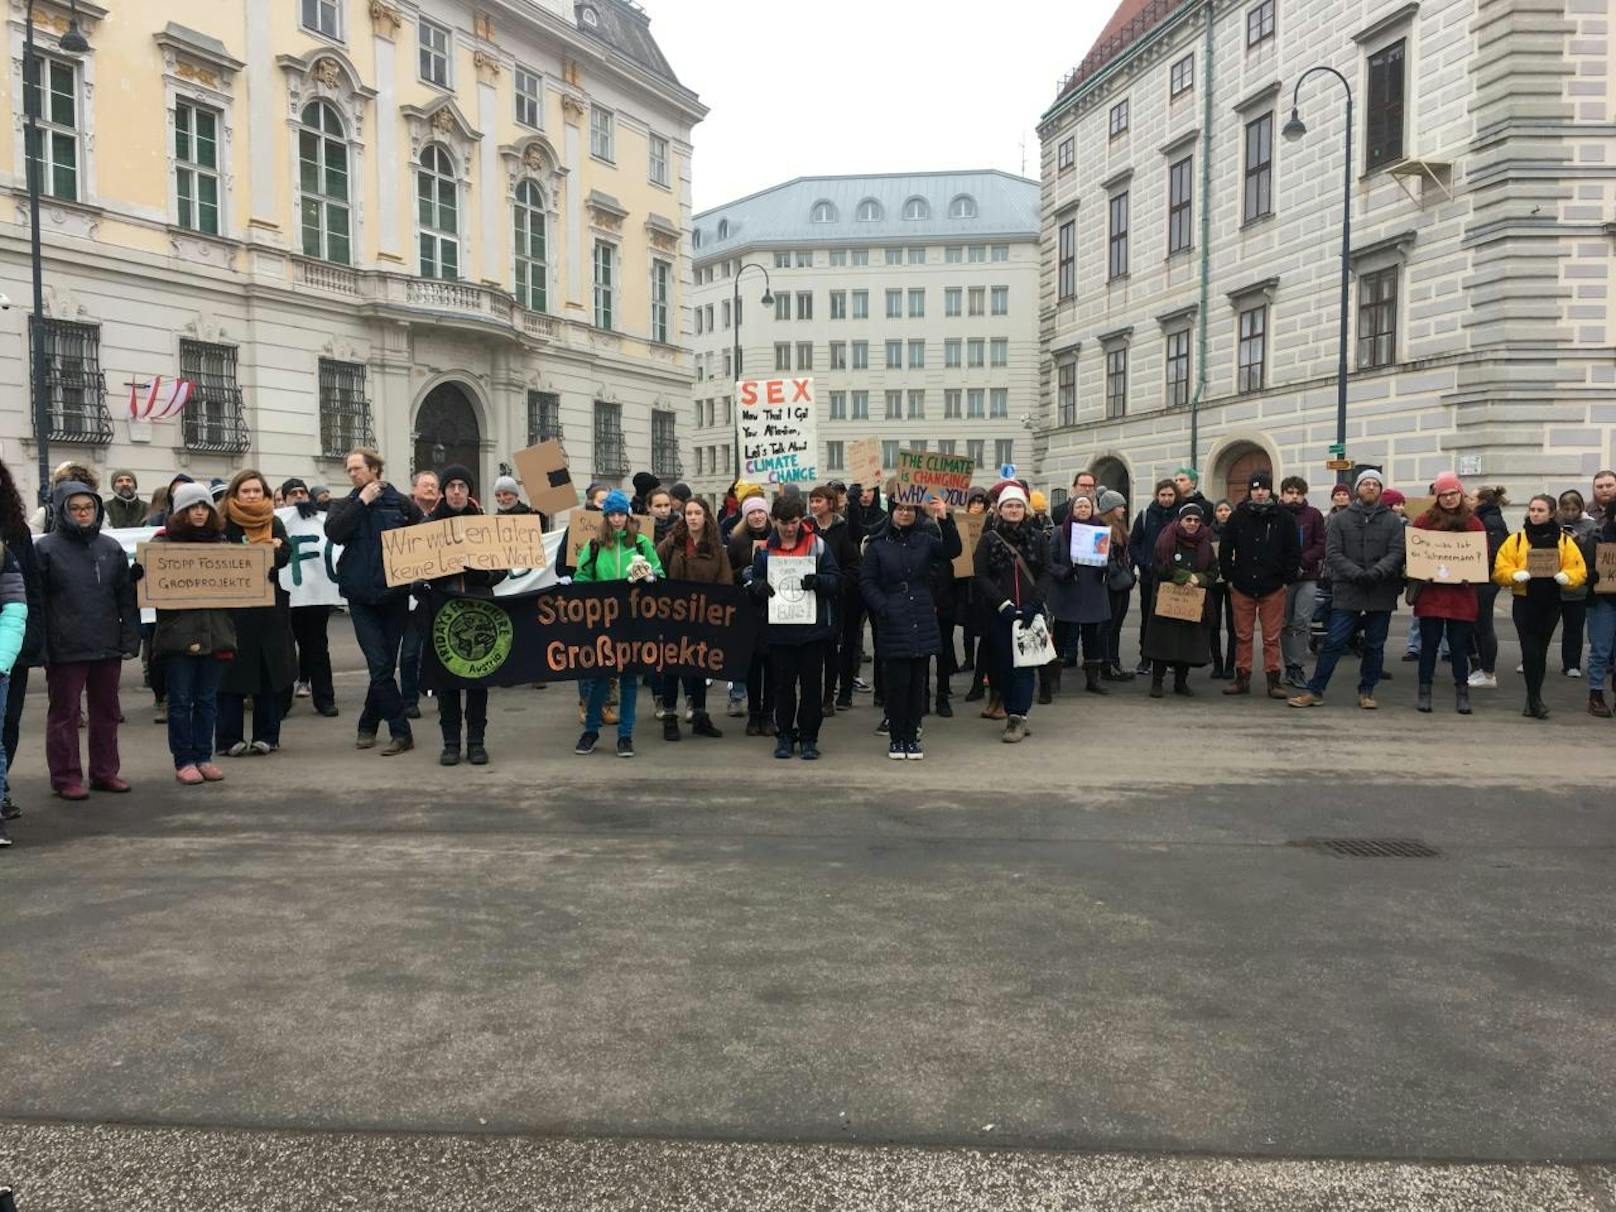 Trotz umfassender Klimaschutzmaßnahmen gehen die jungen Aktivisten von Fridays for Future weiterhin auf die Straße - so auch am Freitag.